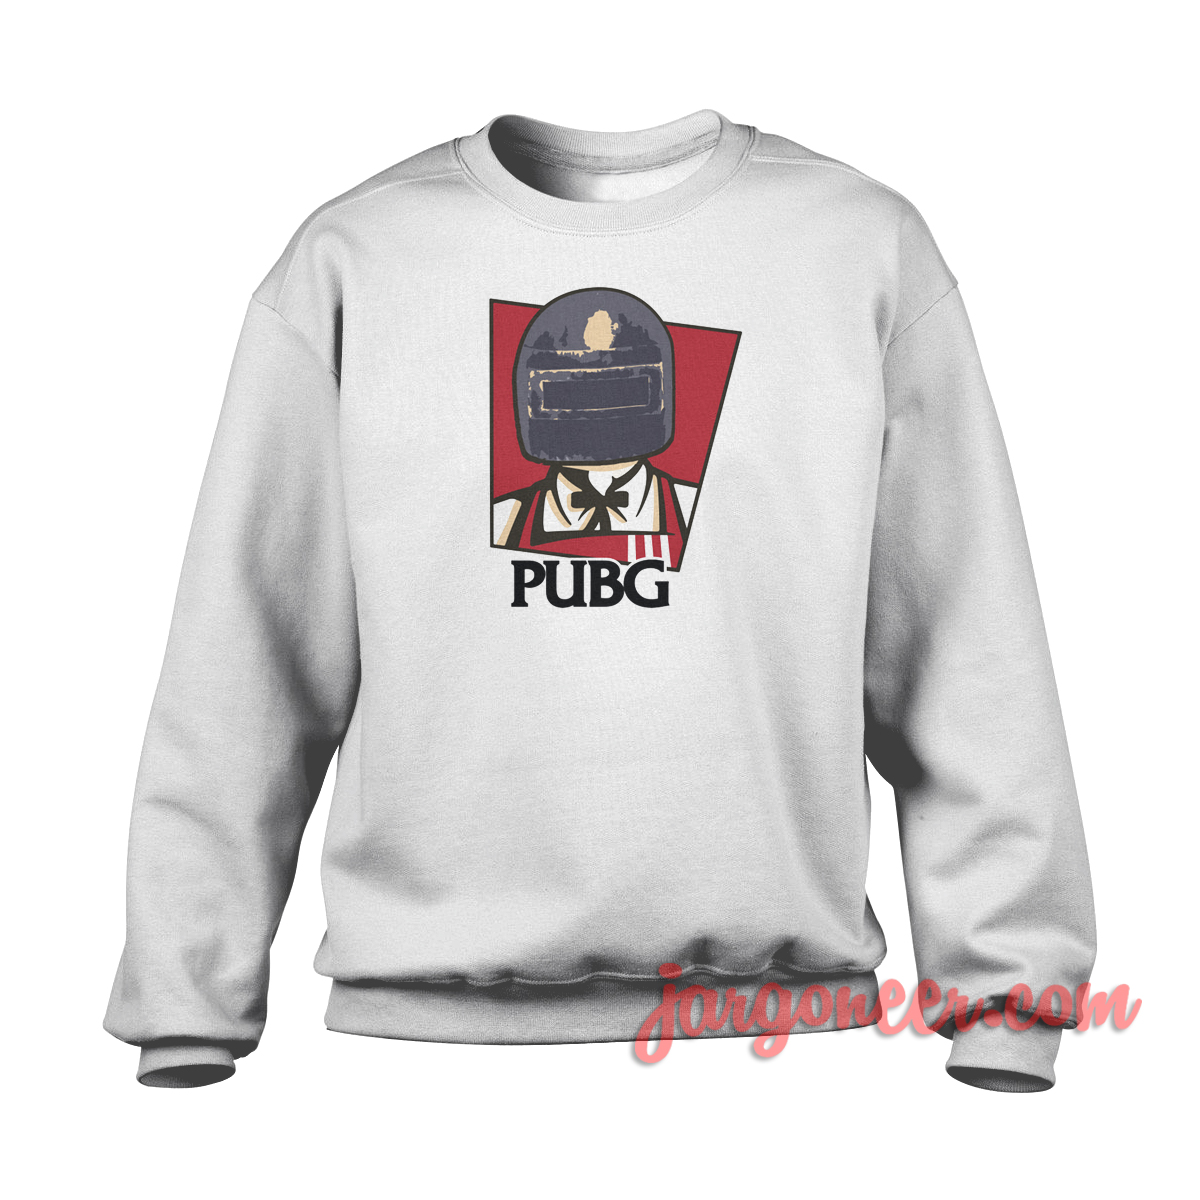 PUBG Parody - Shop Unique Graphic Cool Shirt Designs